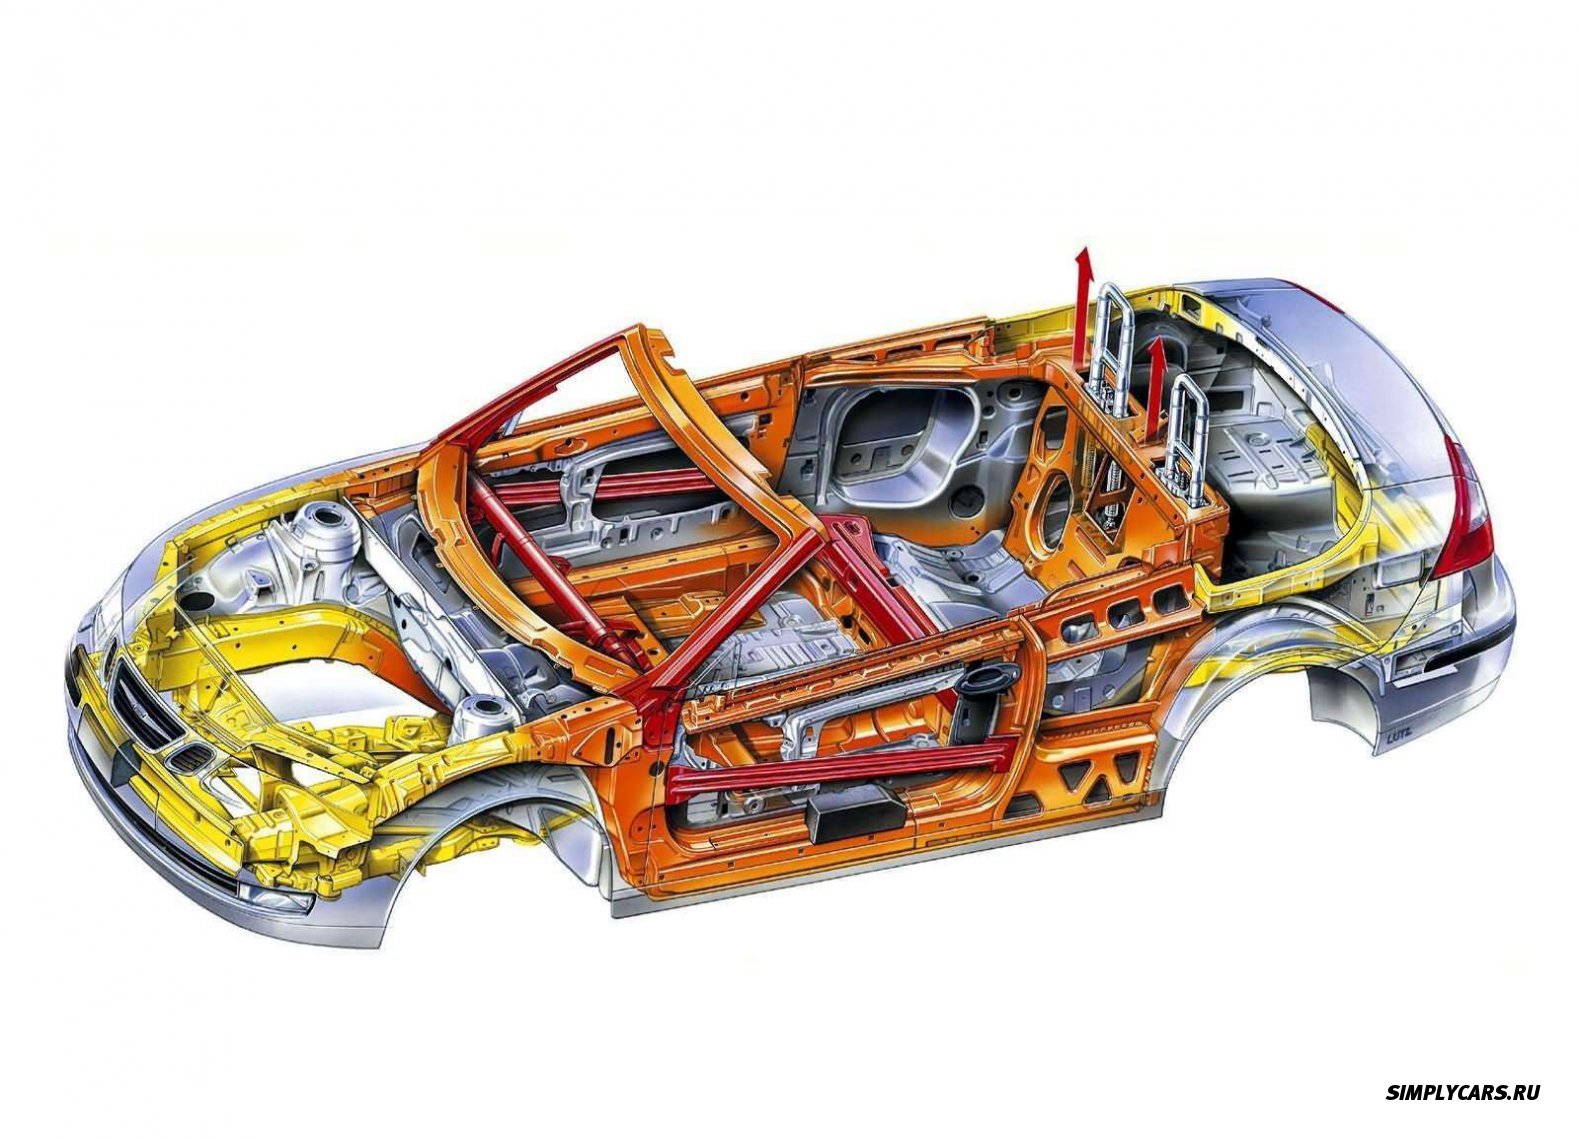 Системы пассивной безопасности автомобиля. Силовой каркас кузова Рено. Силовая структура кузова Солярис. Активные и пассивные системы безопасности автомобилей.